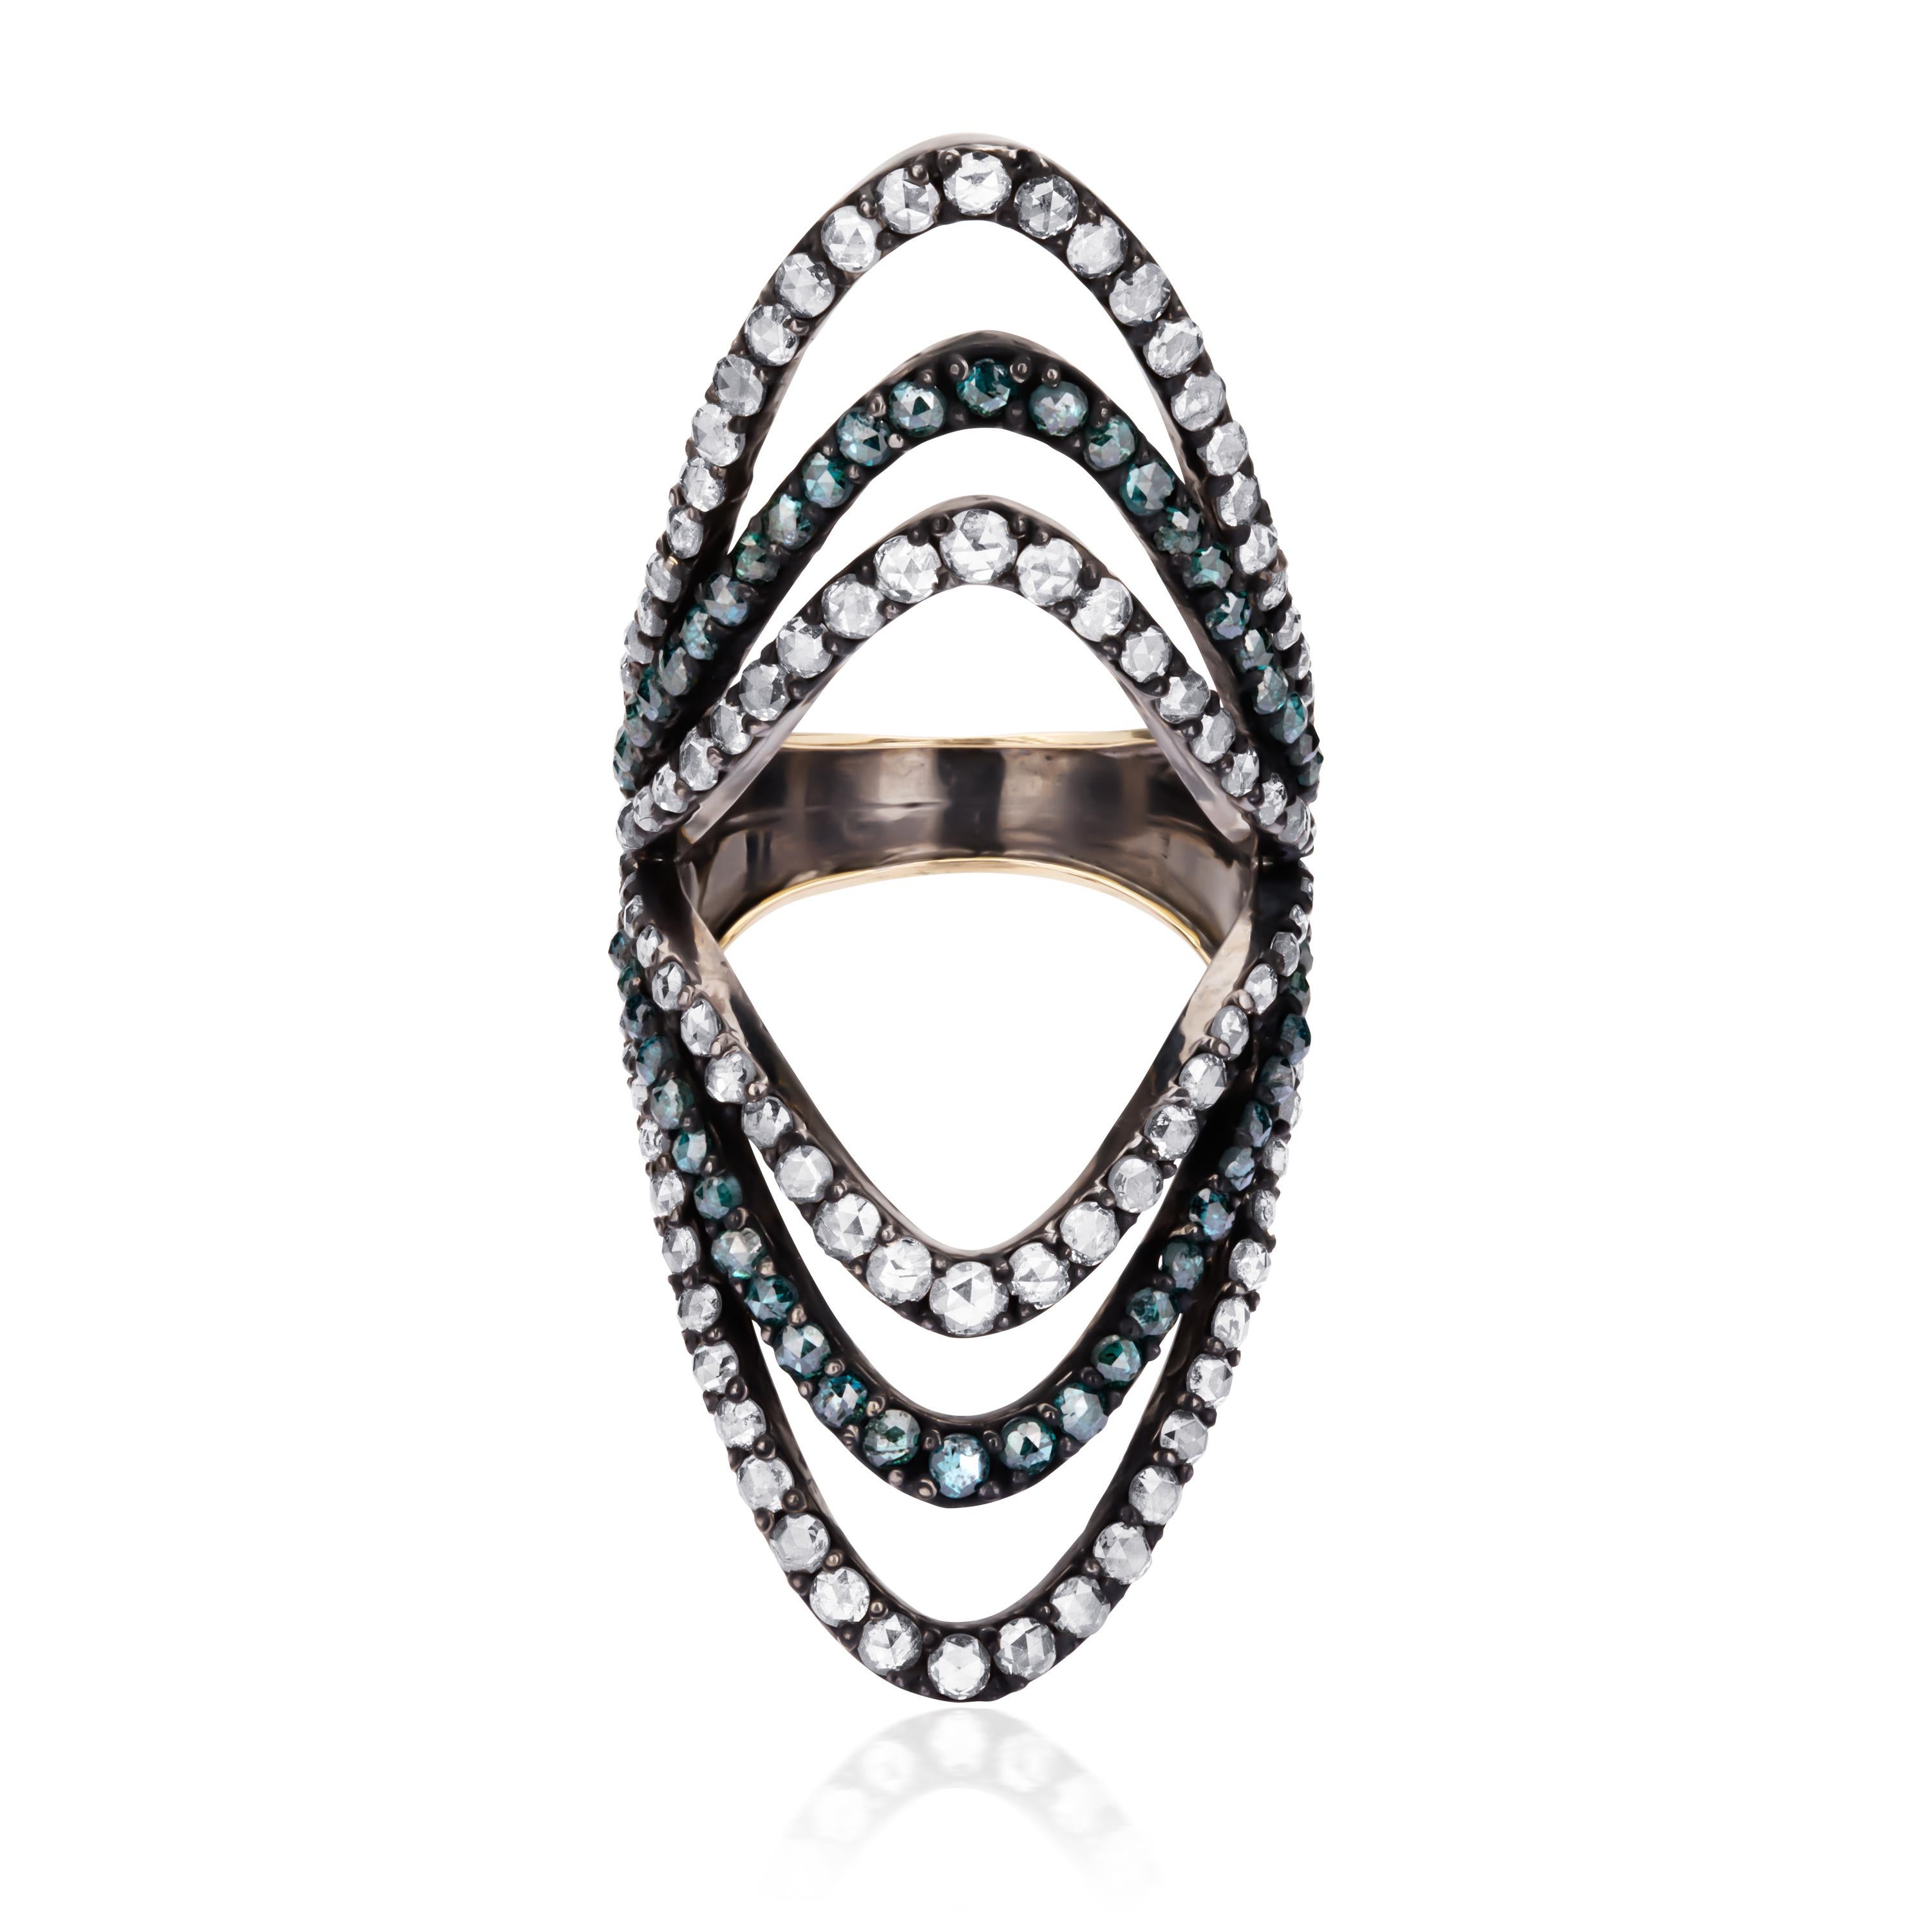 Inspiriert von der extravaganten viktorianischen Ära ist dieser atemberaubende Ring eine wahre Freude. Dieser aus 18 Karat Gold und 925er Sterlingsilber gefertigte Ring zeigt ein einzigartiges durchbrochenes Design, das mit farbigen Diamanten von